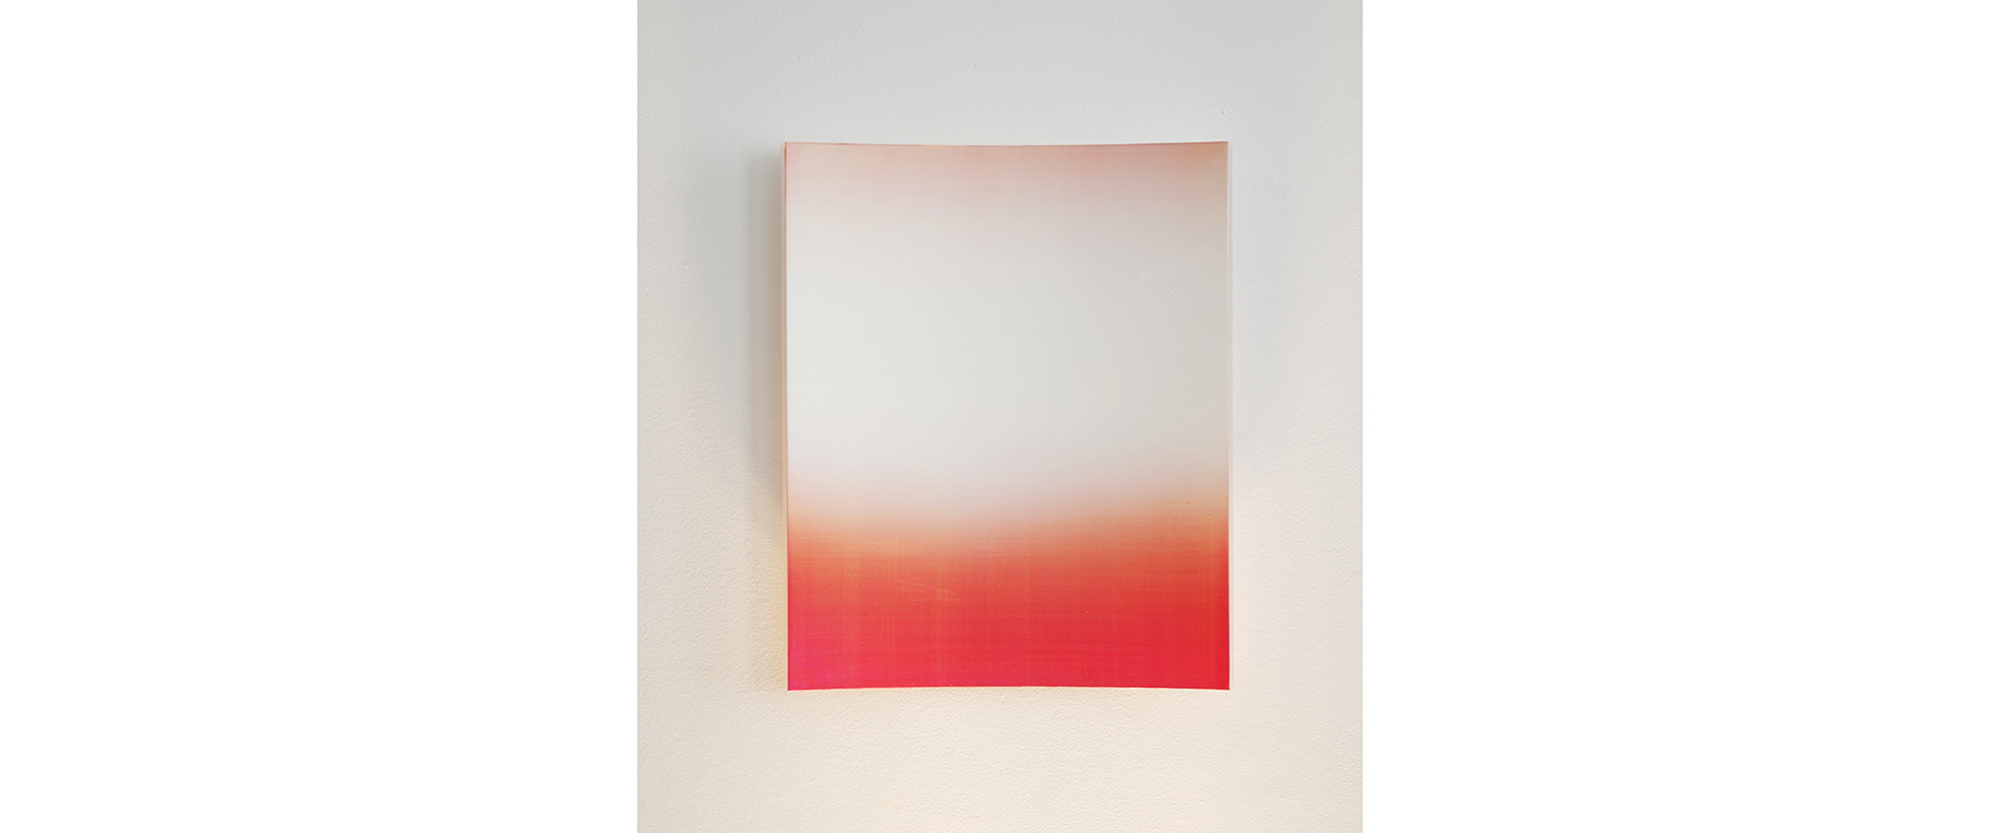 "Konkav 1.19" - 2019, Pigmente, Acryl, auf Kreidegrund, auf konkavem Acrylglaskörper, 30 x 24 x 1,2 cm